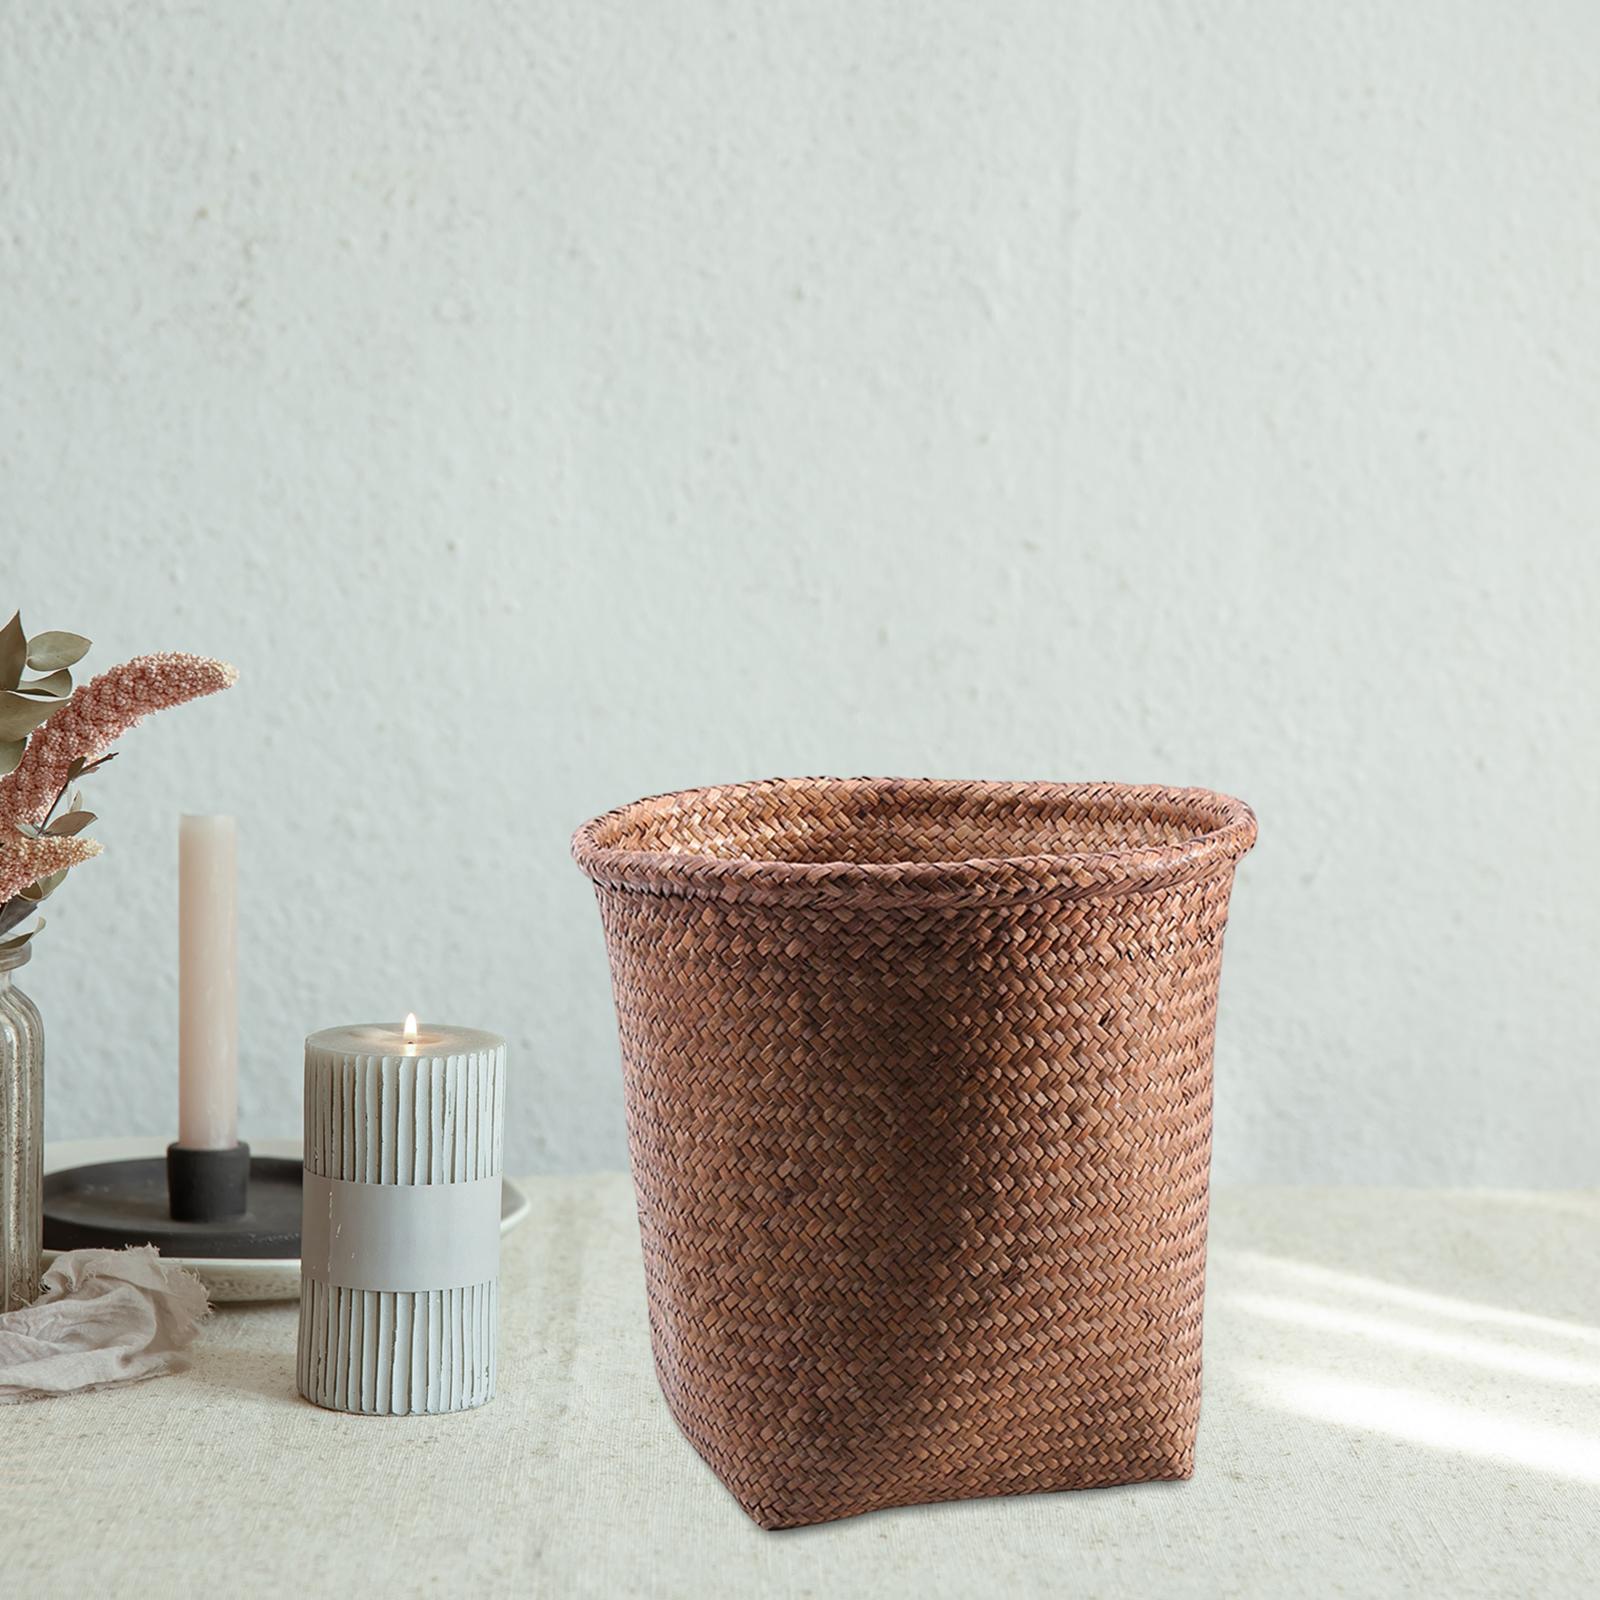 Storage Plant Pots Towels Nursery Balcony Garden Home Woven Straw Baskets Coffee